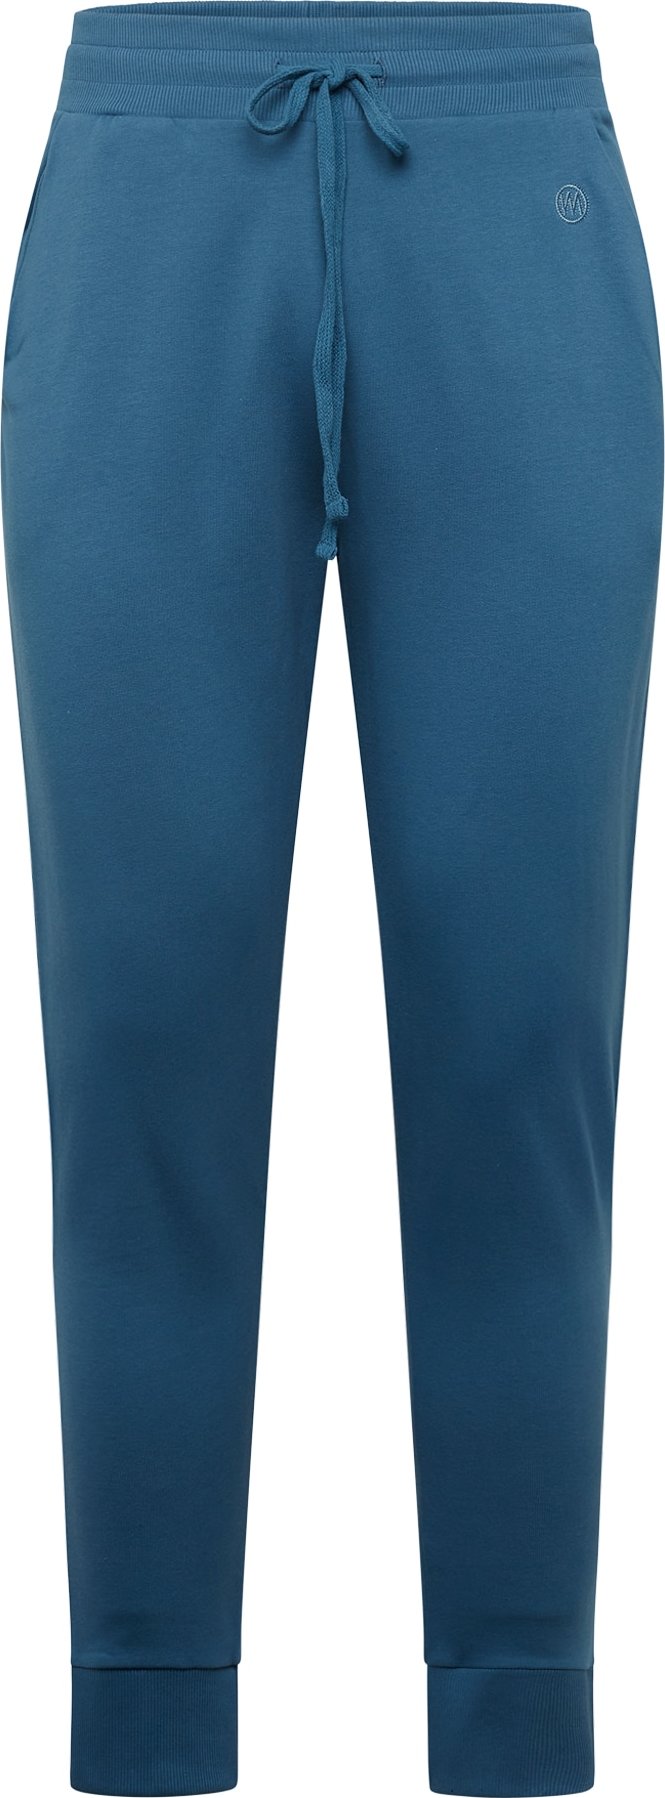 WESTMARK LONDON Kalhoty azurová modrá